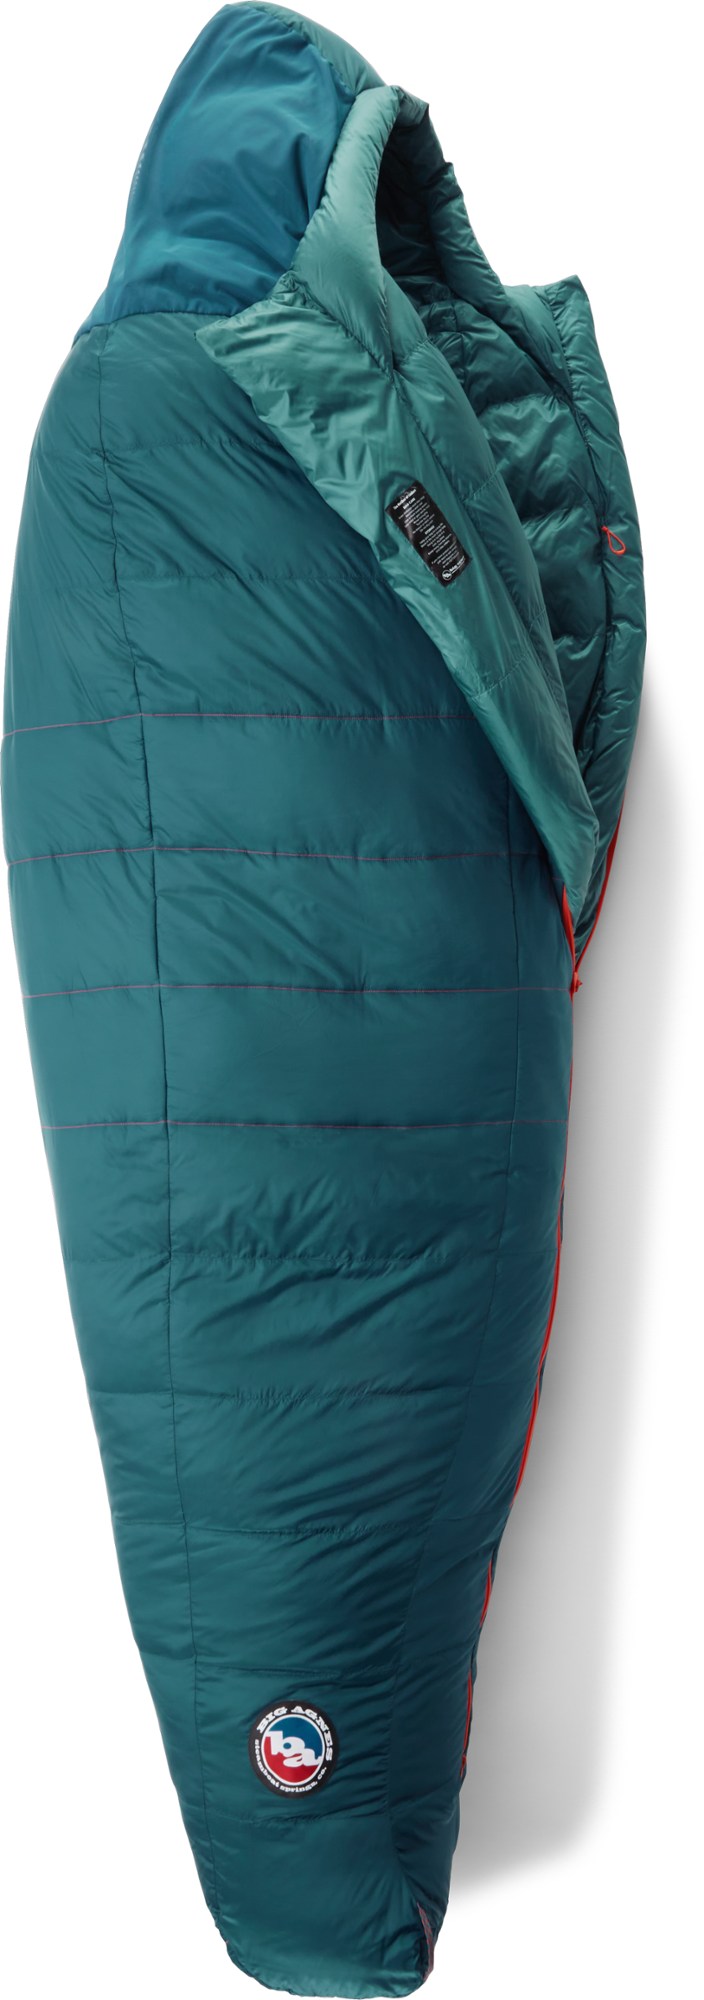 спальный мешок echo park 0 big agnes зеленый Спальный мешок Sidewinder SL 20 - мужской Big Agnes, синий